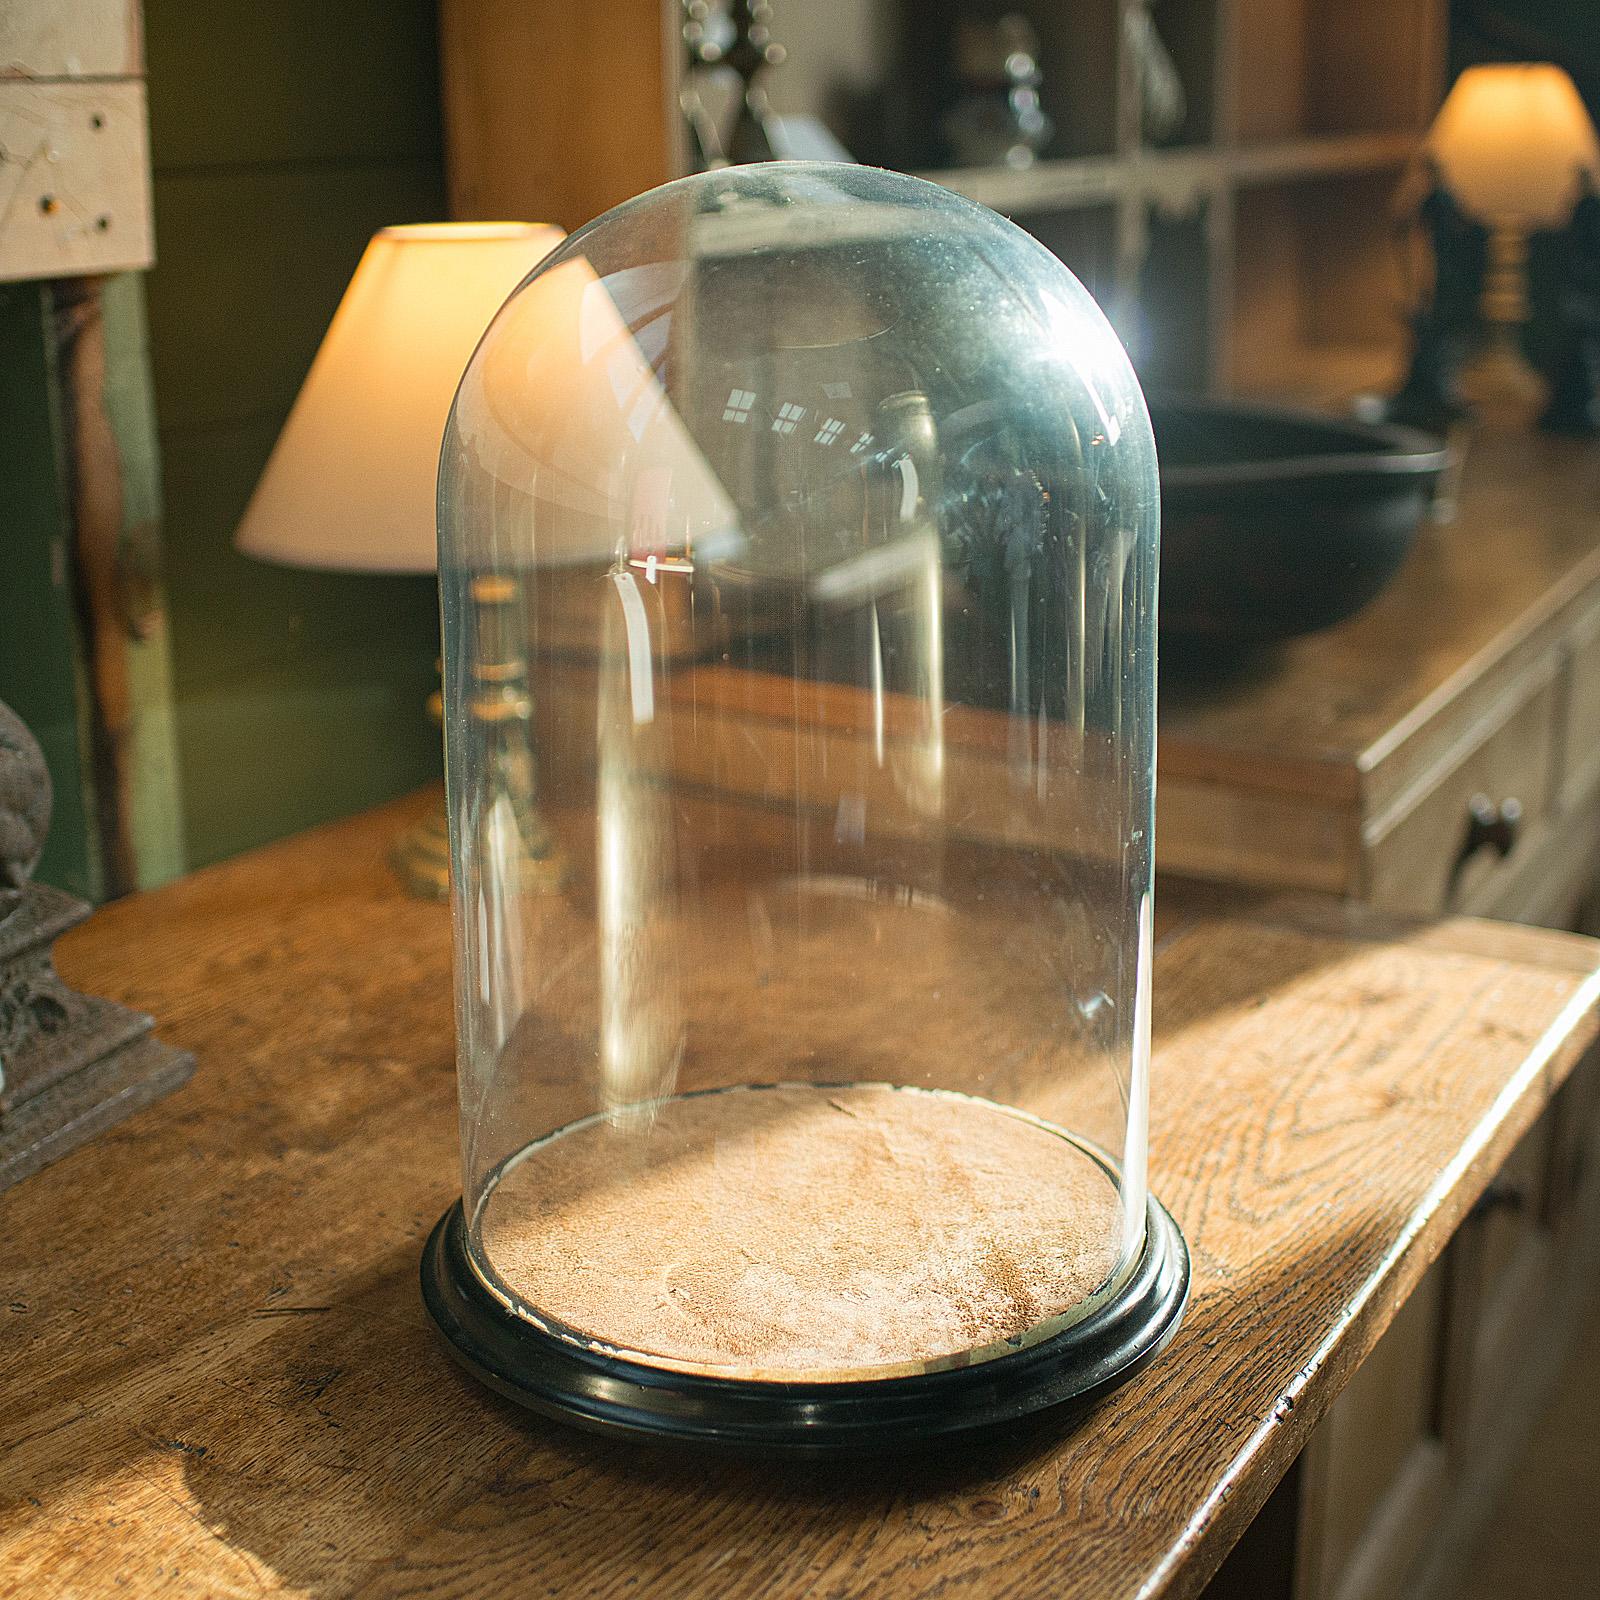 Il s'agit d'un dôme de taxidermie antique. Vitrine de collection anglaise en verre, datant de la fin de la période victorienne, vers 1880.

Dôme d'affichage de qualité et de taille généreuse
Présente une patine vieillie souhaitable sur toute sa